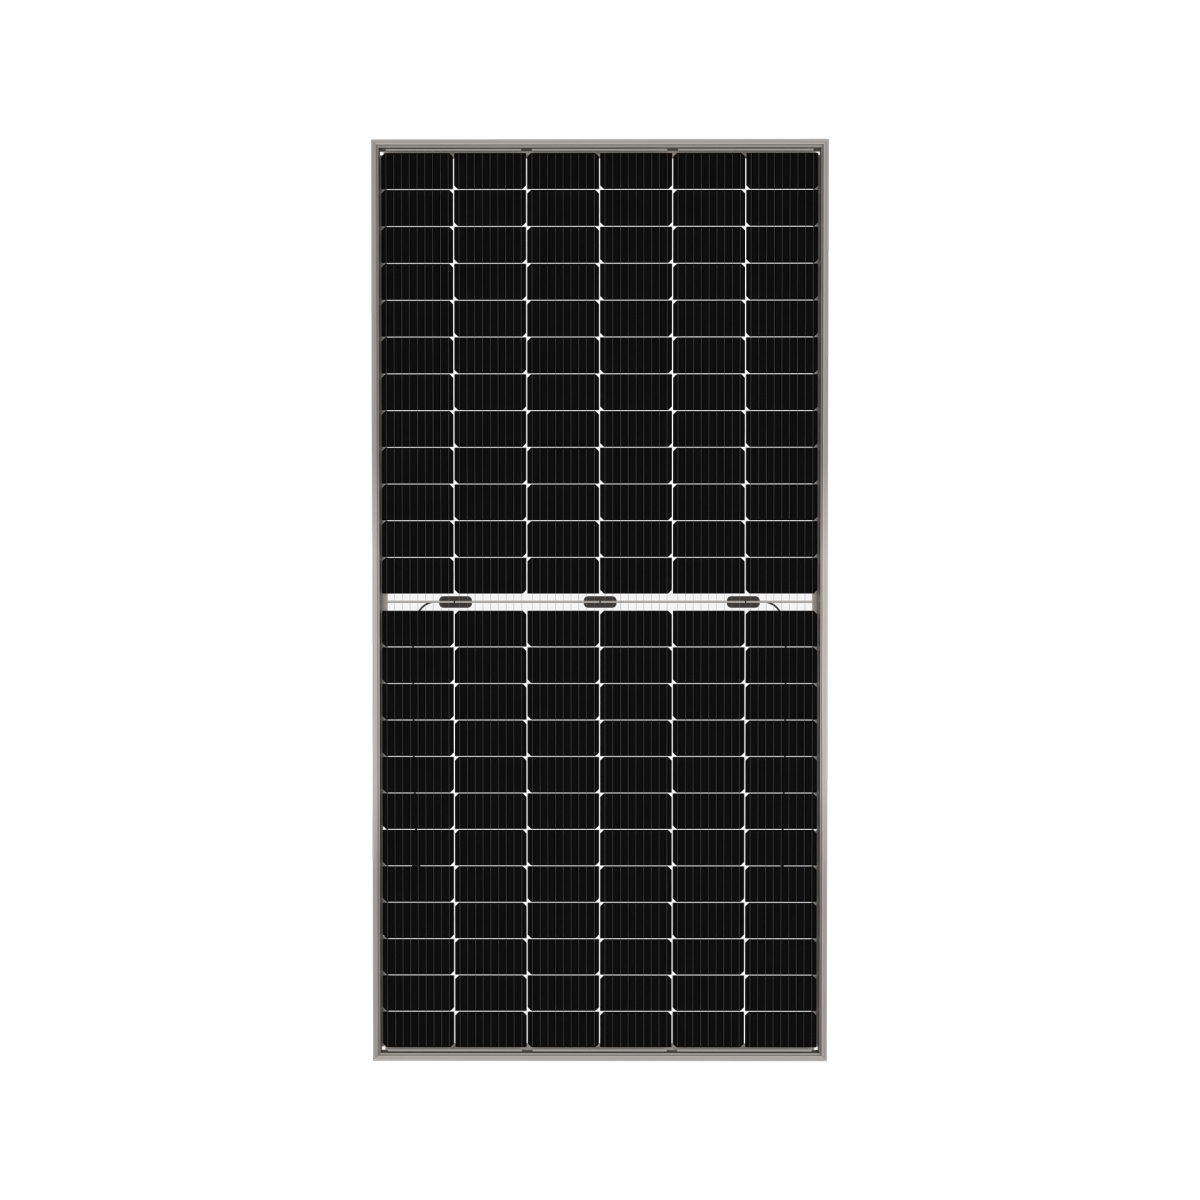 TommaTech 465Wp M6 144PM Cells Bifacial Half-Cut MB Solar Panel